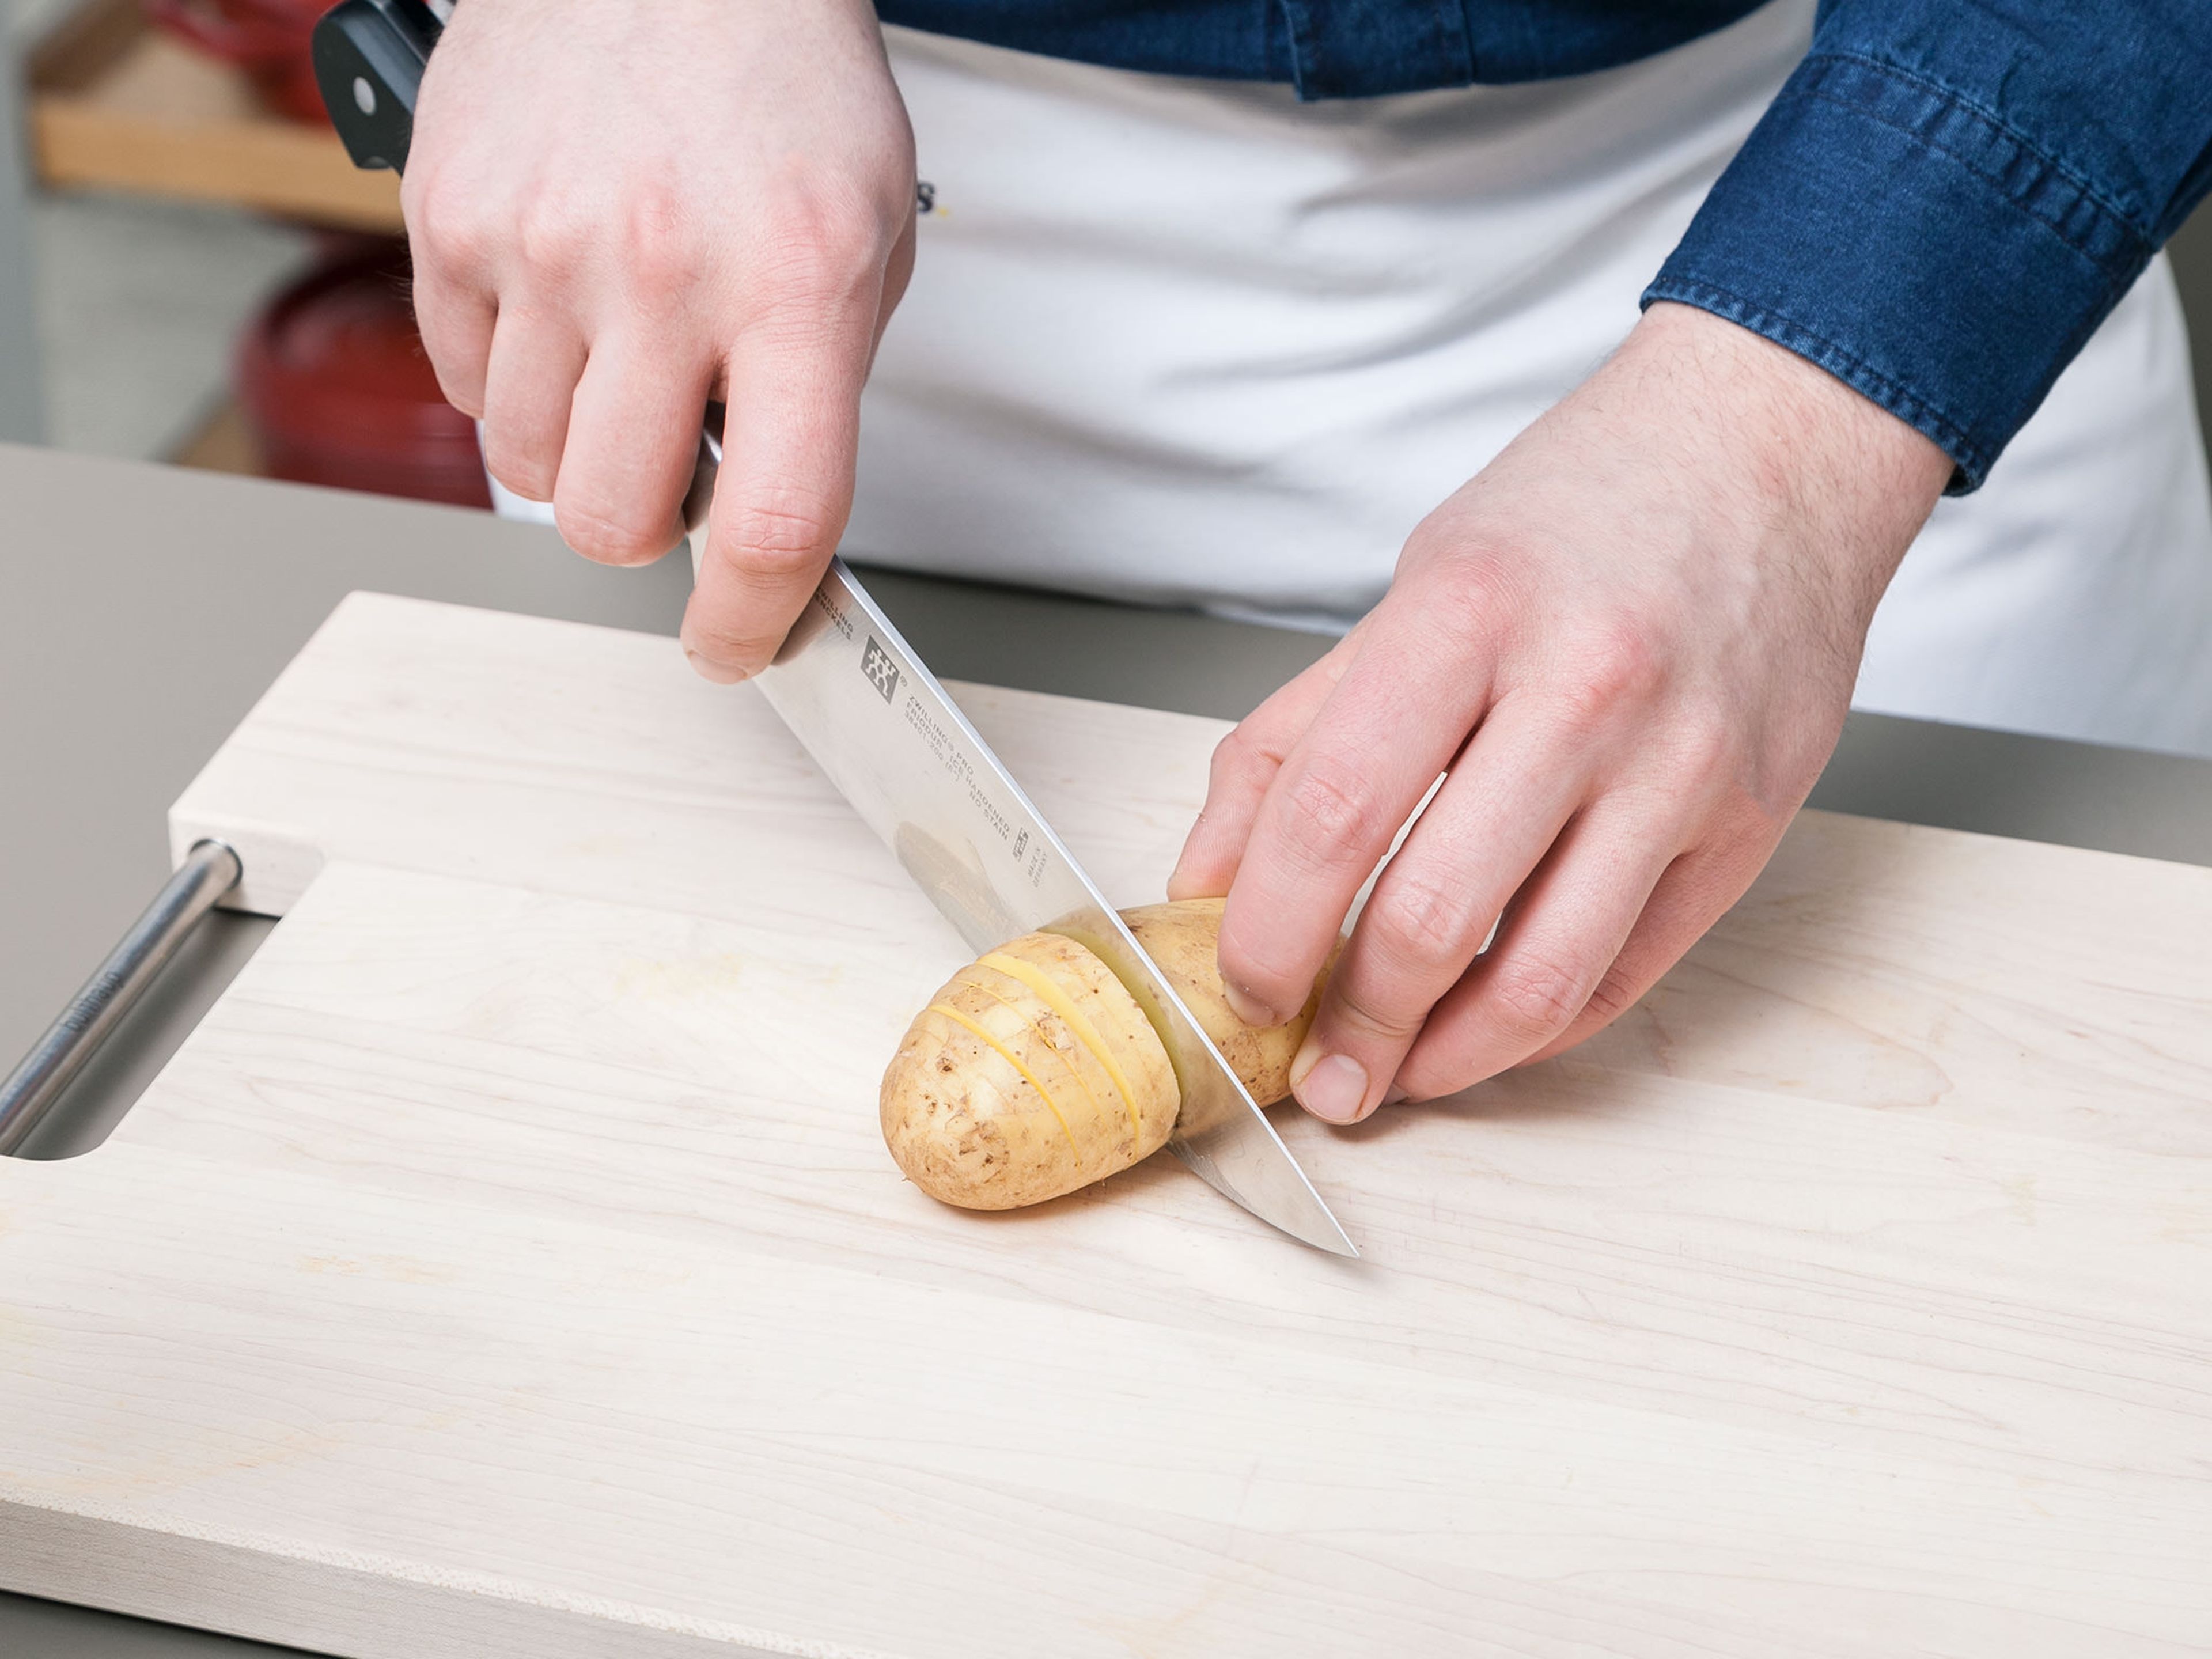 Backofen auf 180°C vorheizen. Frühkartoffeln waschen und abtrocknen. Die Frühkartoffeln mit einem scharfen Messer in schmalen Abständen einschneiden. Darauf achten, dass die Kartoffeln nicht vollständig durchgeschnitten werden, sie sollten auf der Unterseite noch intakt sein.